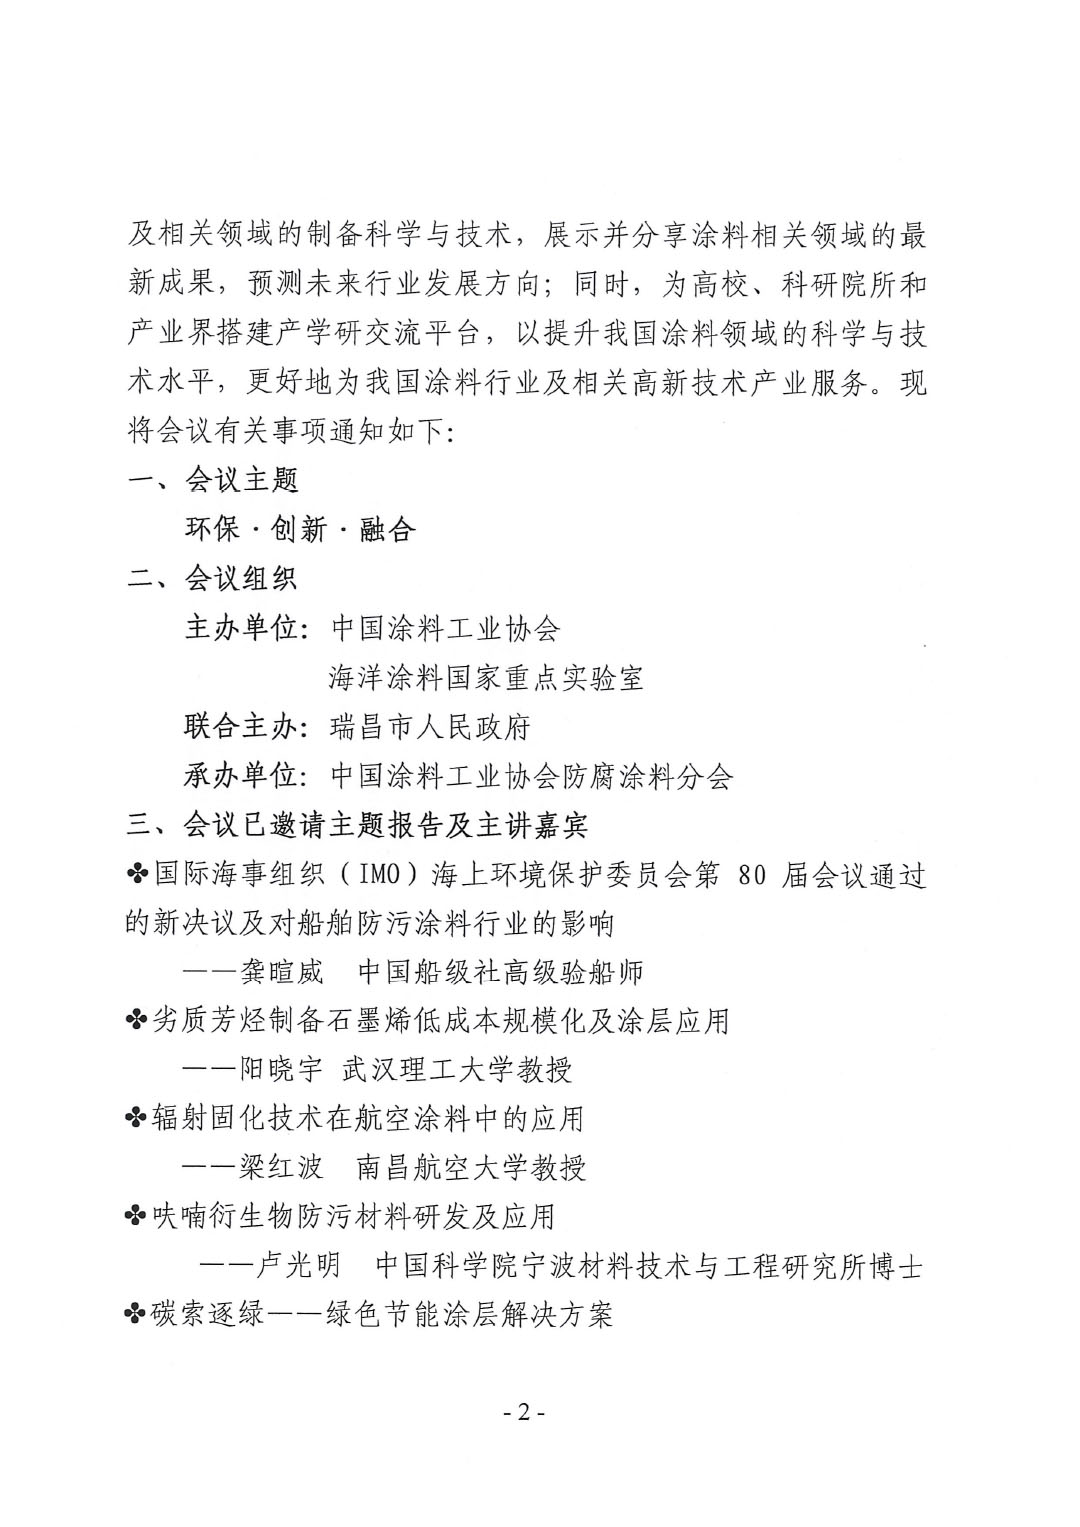 2023年中国涂料工业协会防腐涂料分会年会通知-2